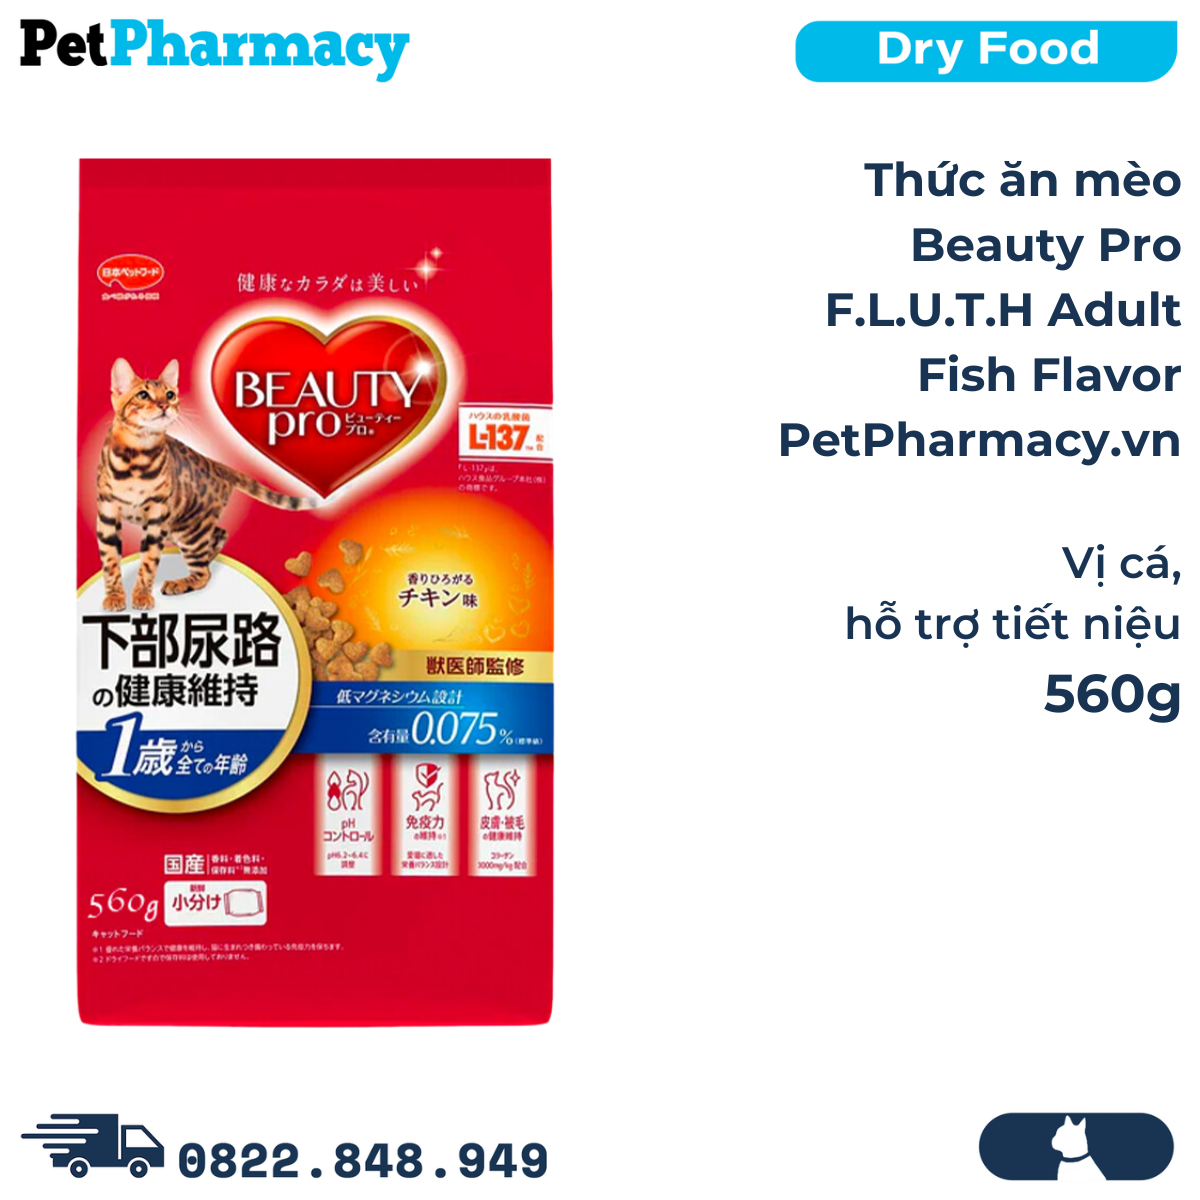  Thức ăn mèo Beauty Pro F.L.U.T.H Adult Fish Flavor 560g - Vị cá, hỗ trợ tiết niệu 